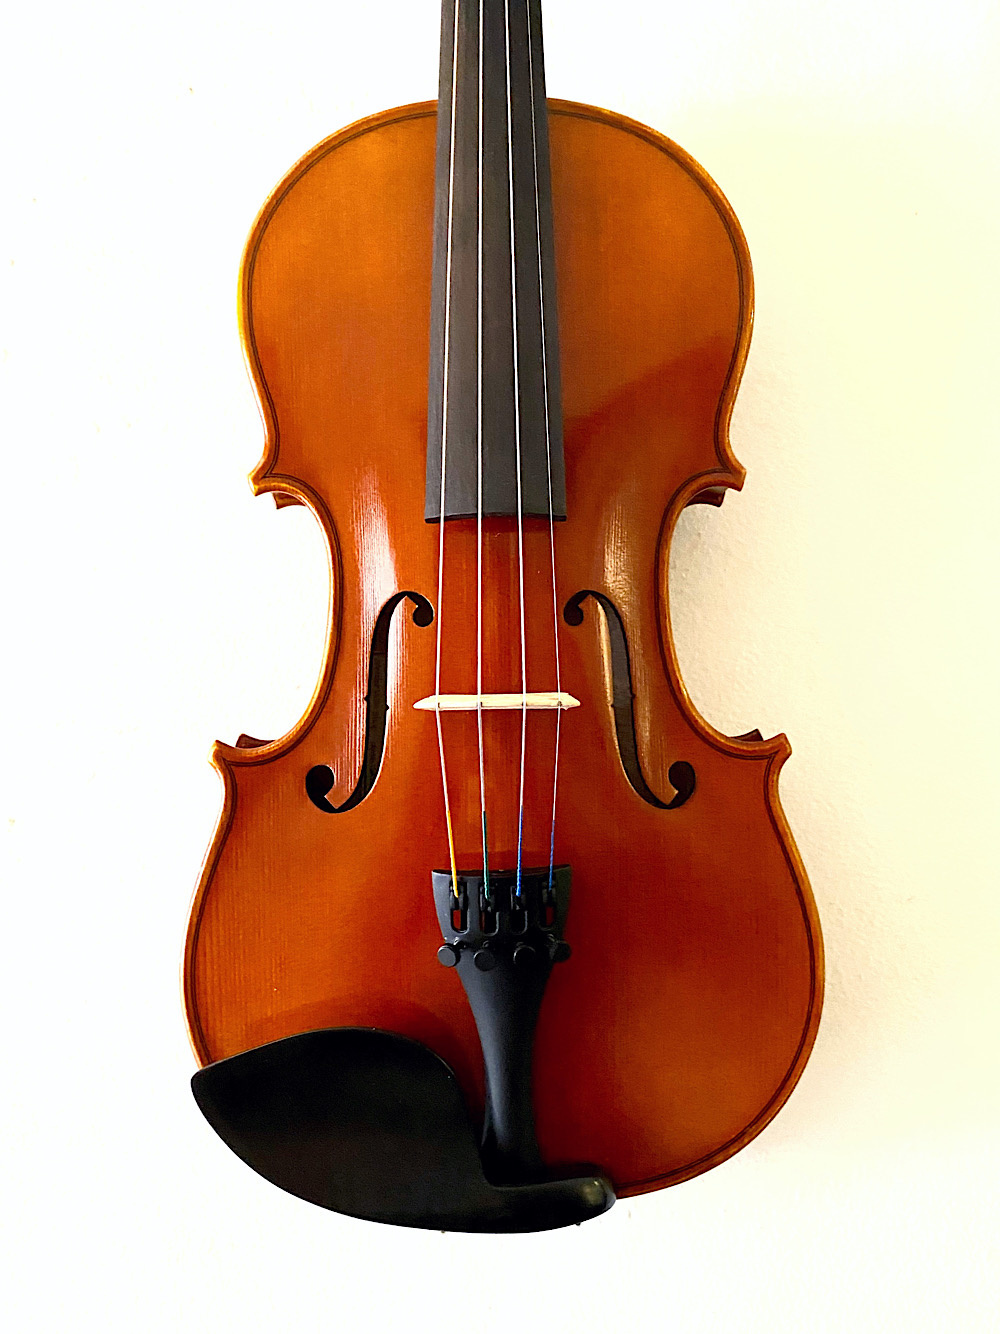 Serafina Serafina DX 3/4 violin with free case, bow, rosin & polish cloth